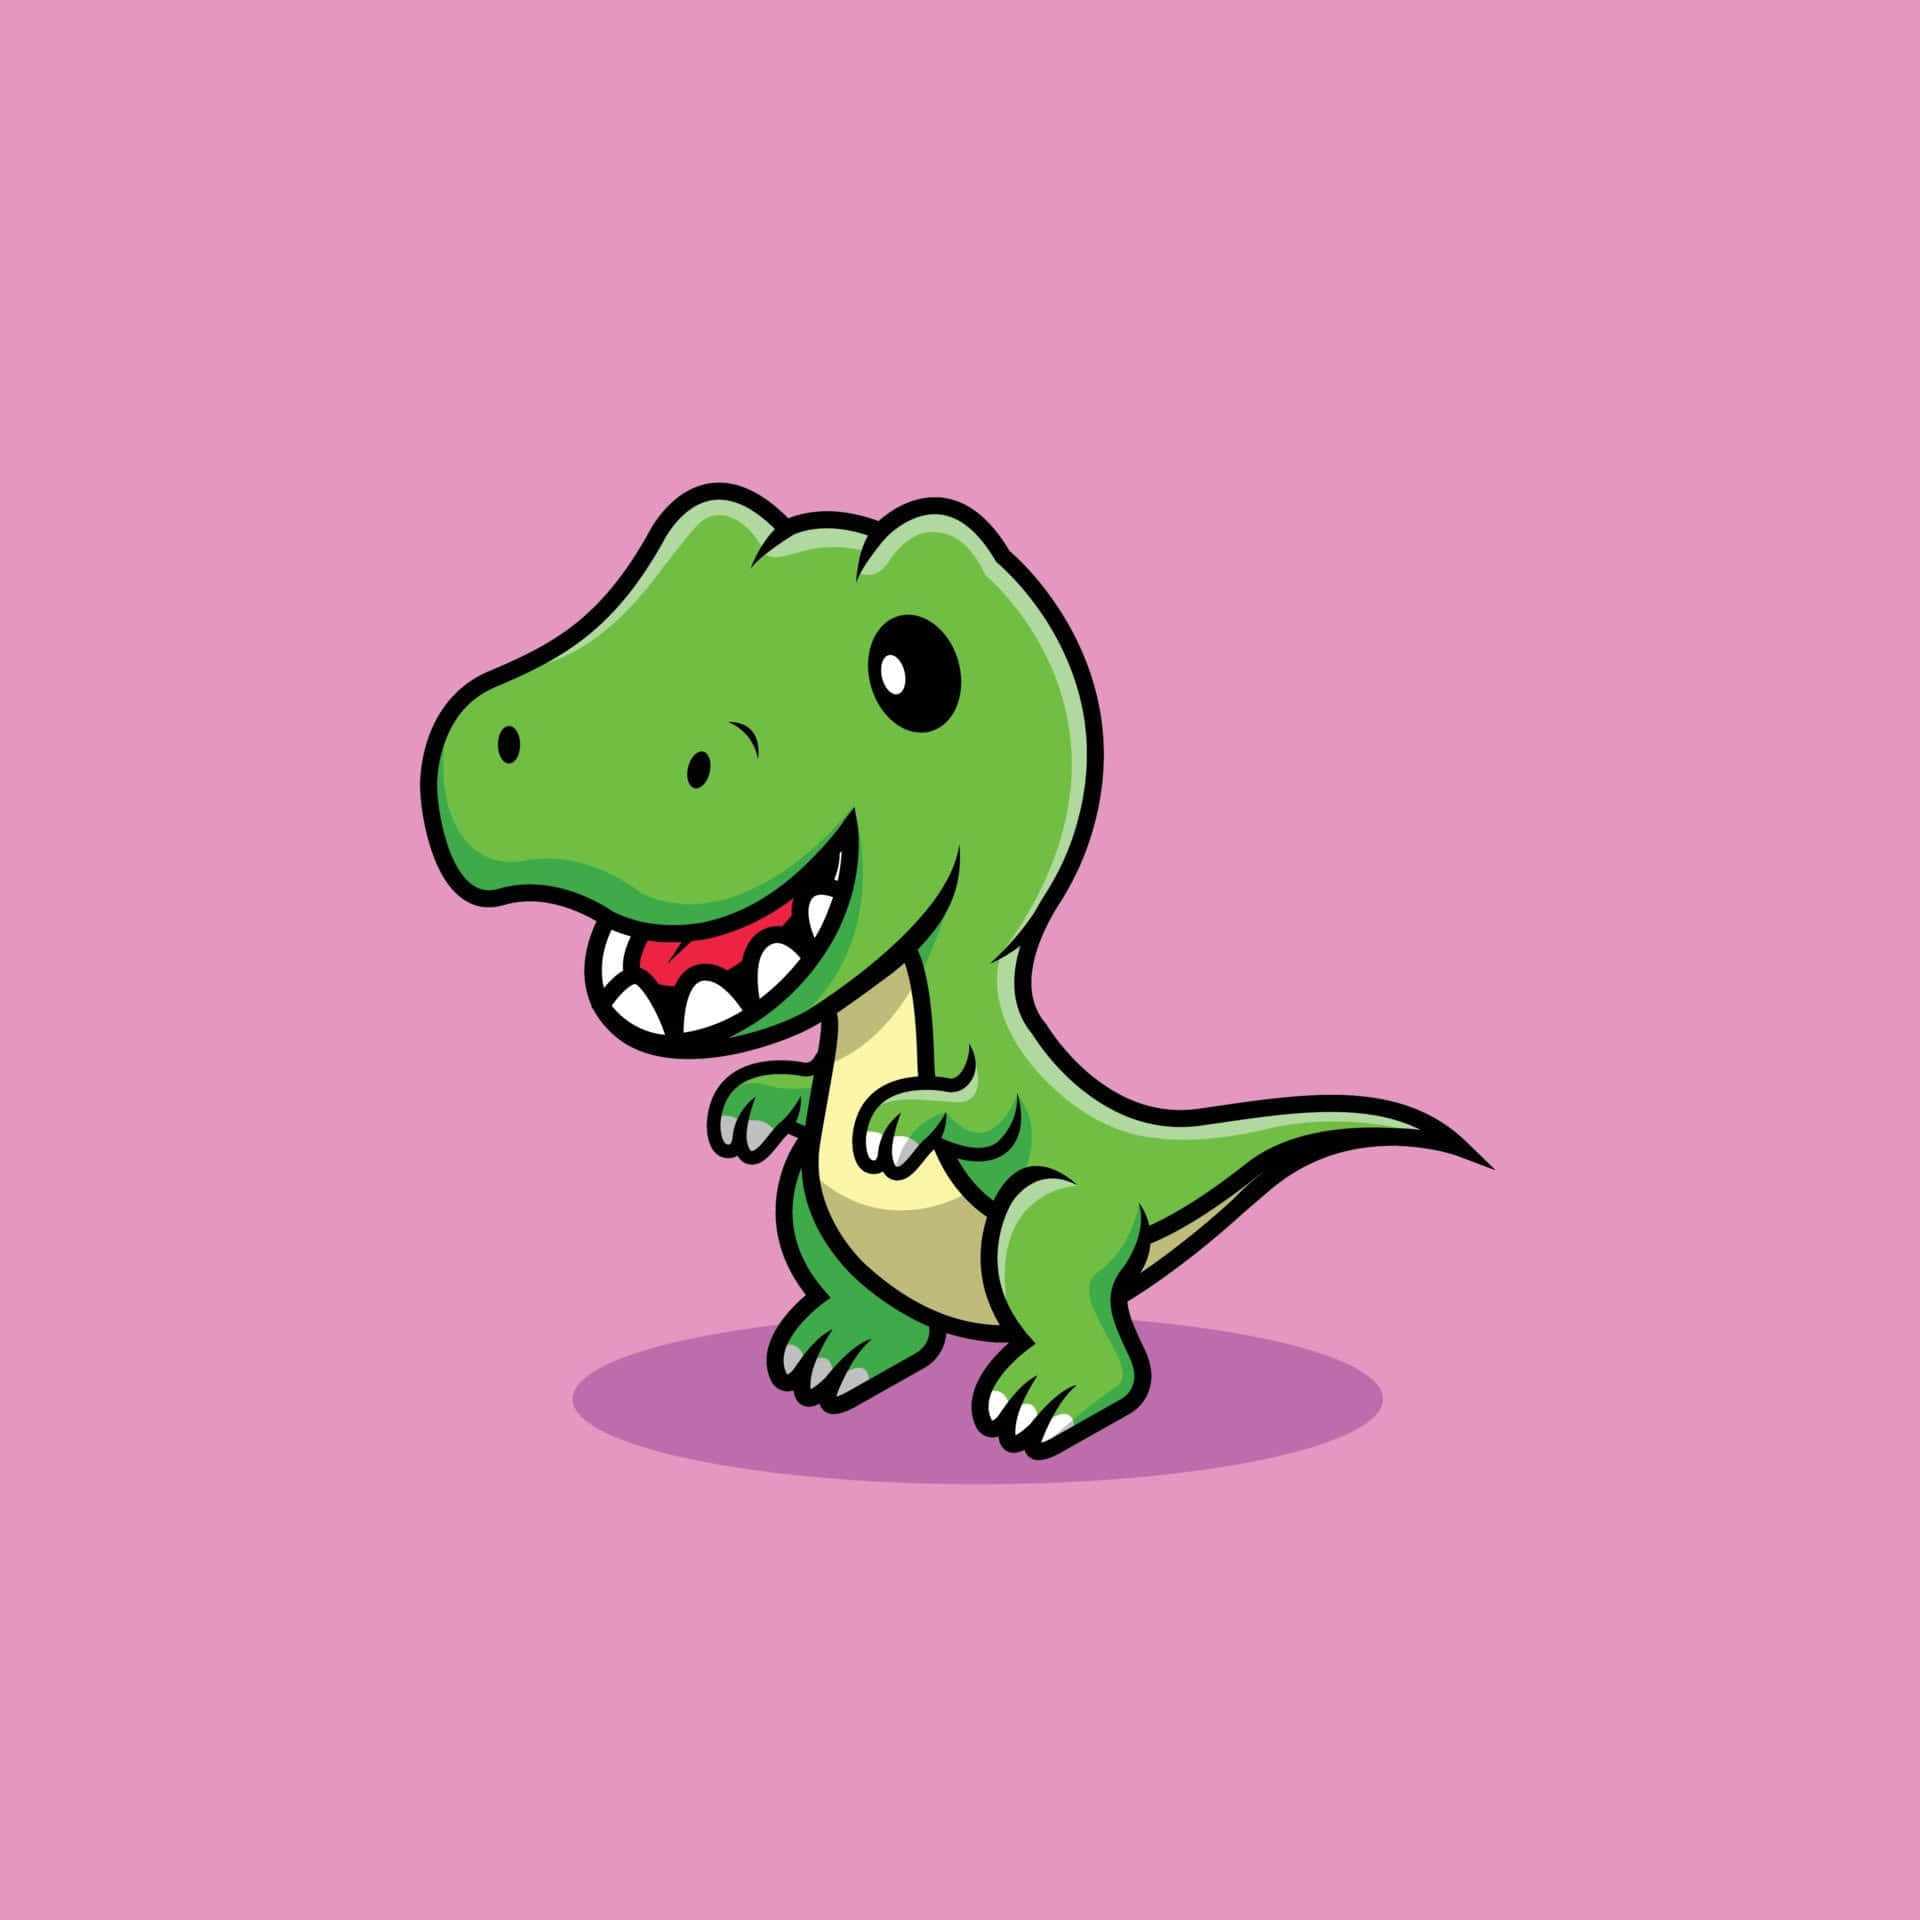 Imagende Un Lindo Dinosaurio Trex Sonriendo